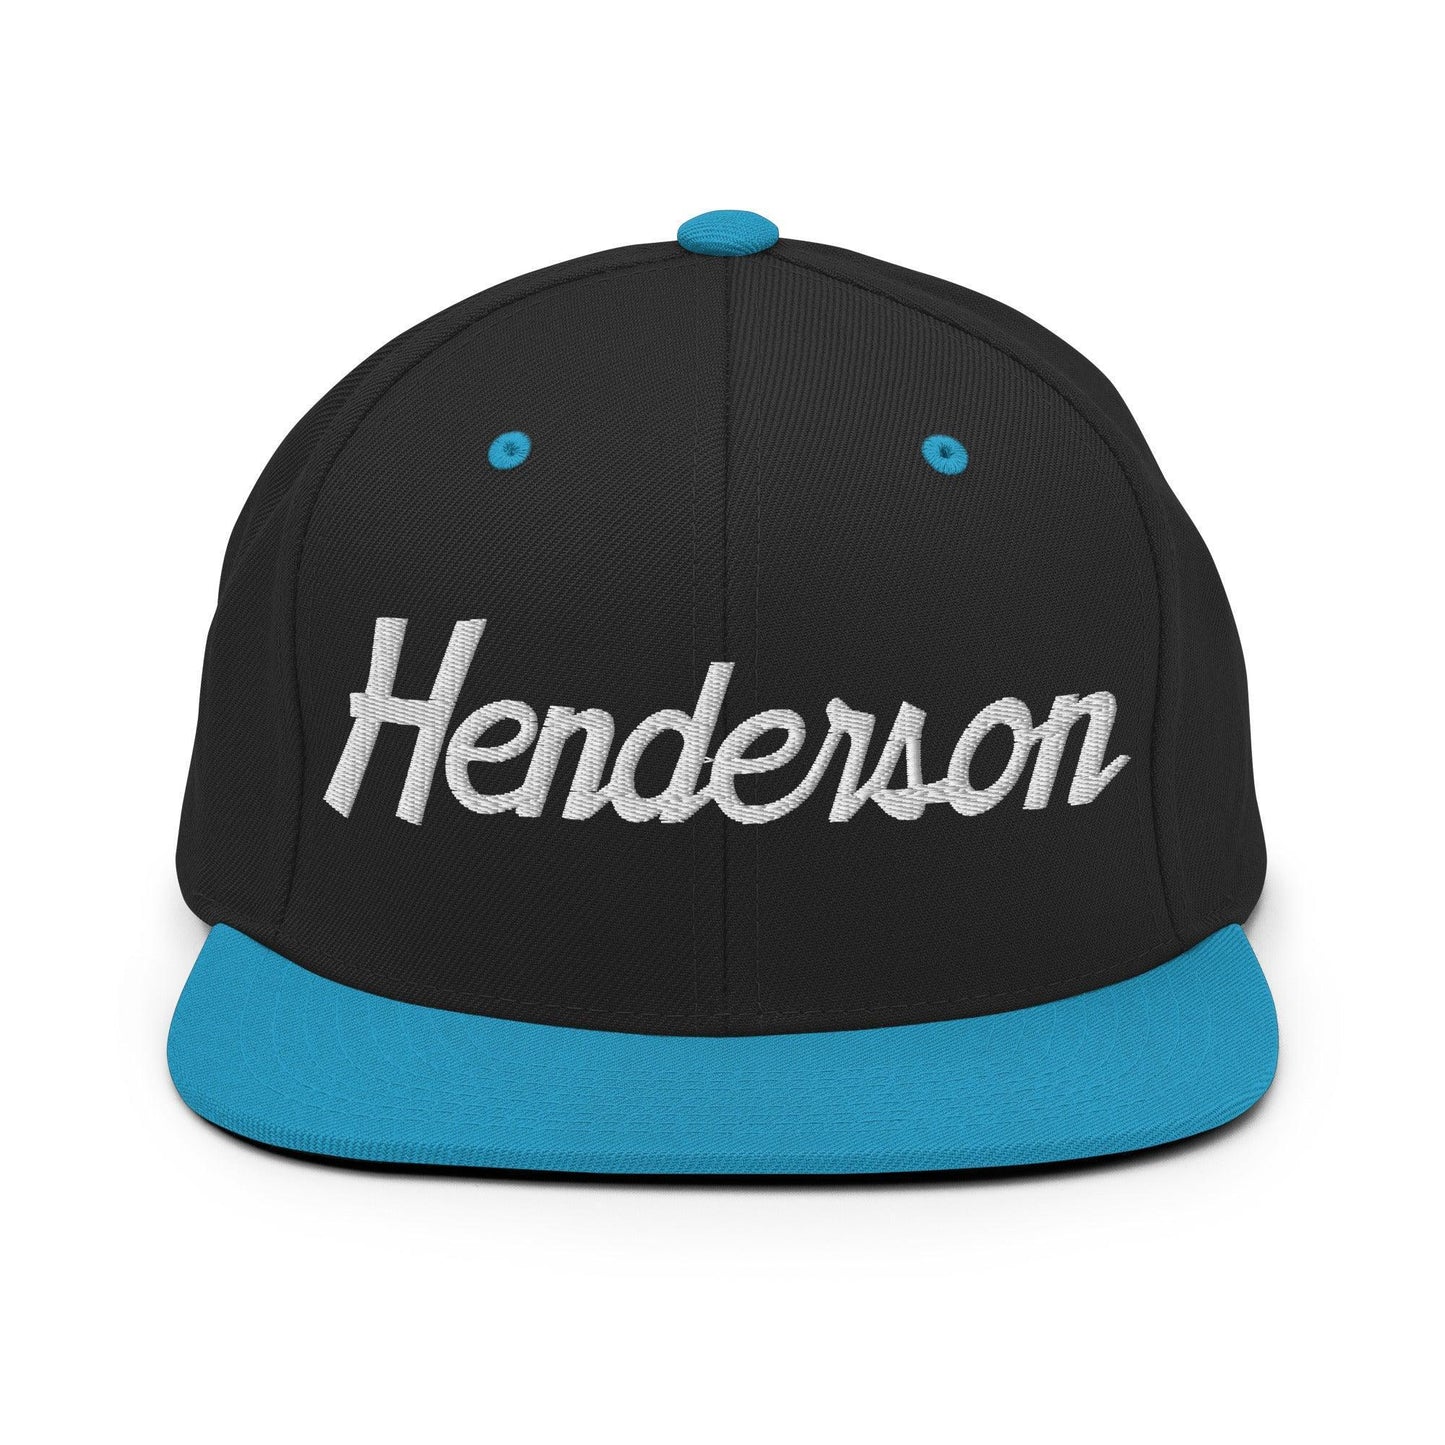 Henderson Script Snapback Hat Black Teal